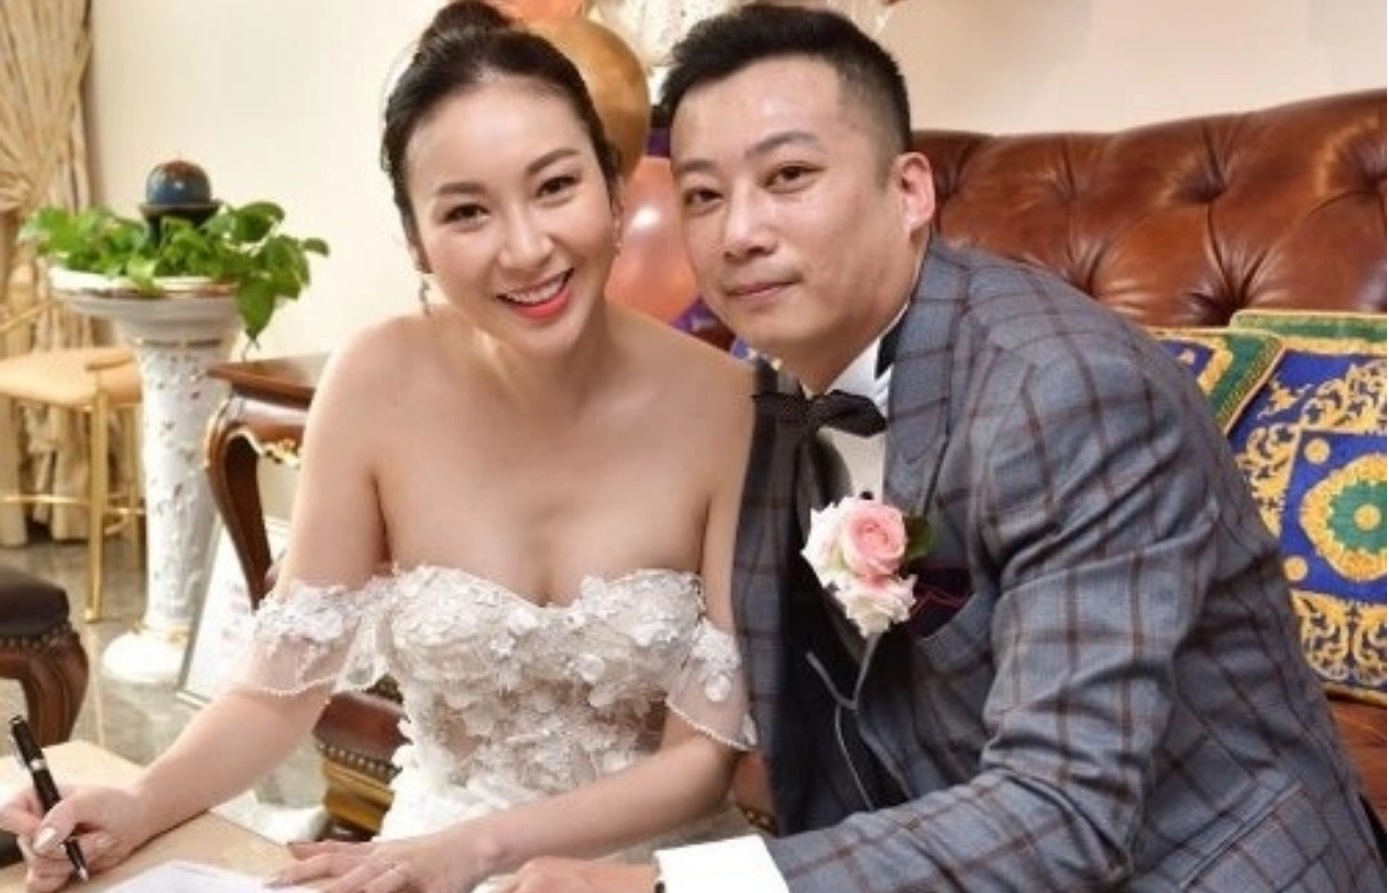 Mỹ nhân Hong Kong thông báo bỏ chồng sau hai năm cưới - Ảnh 1